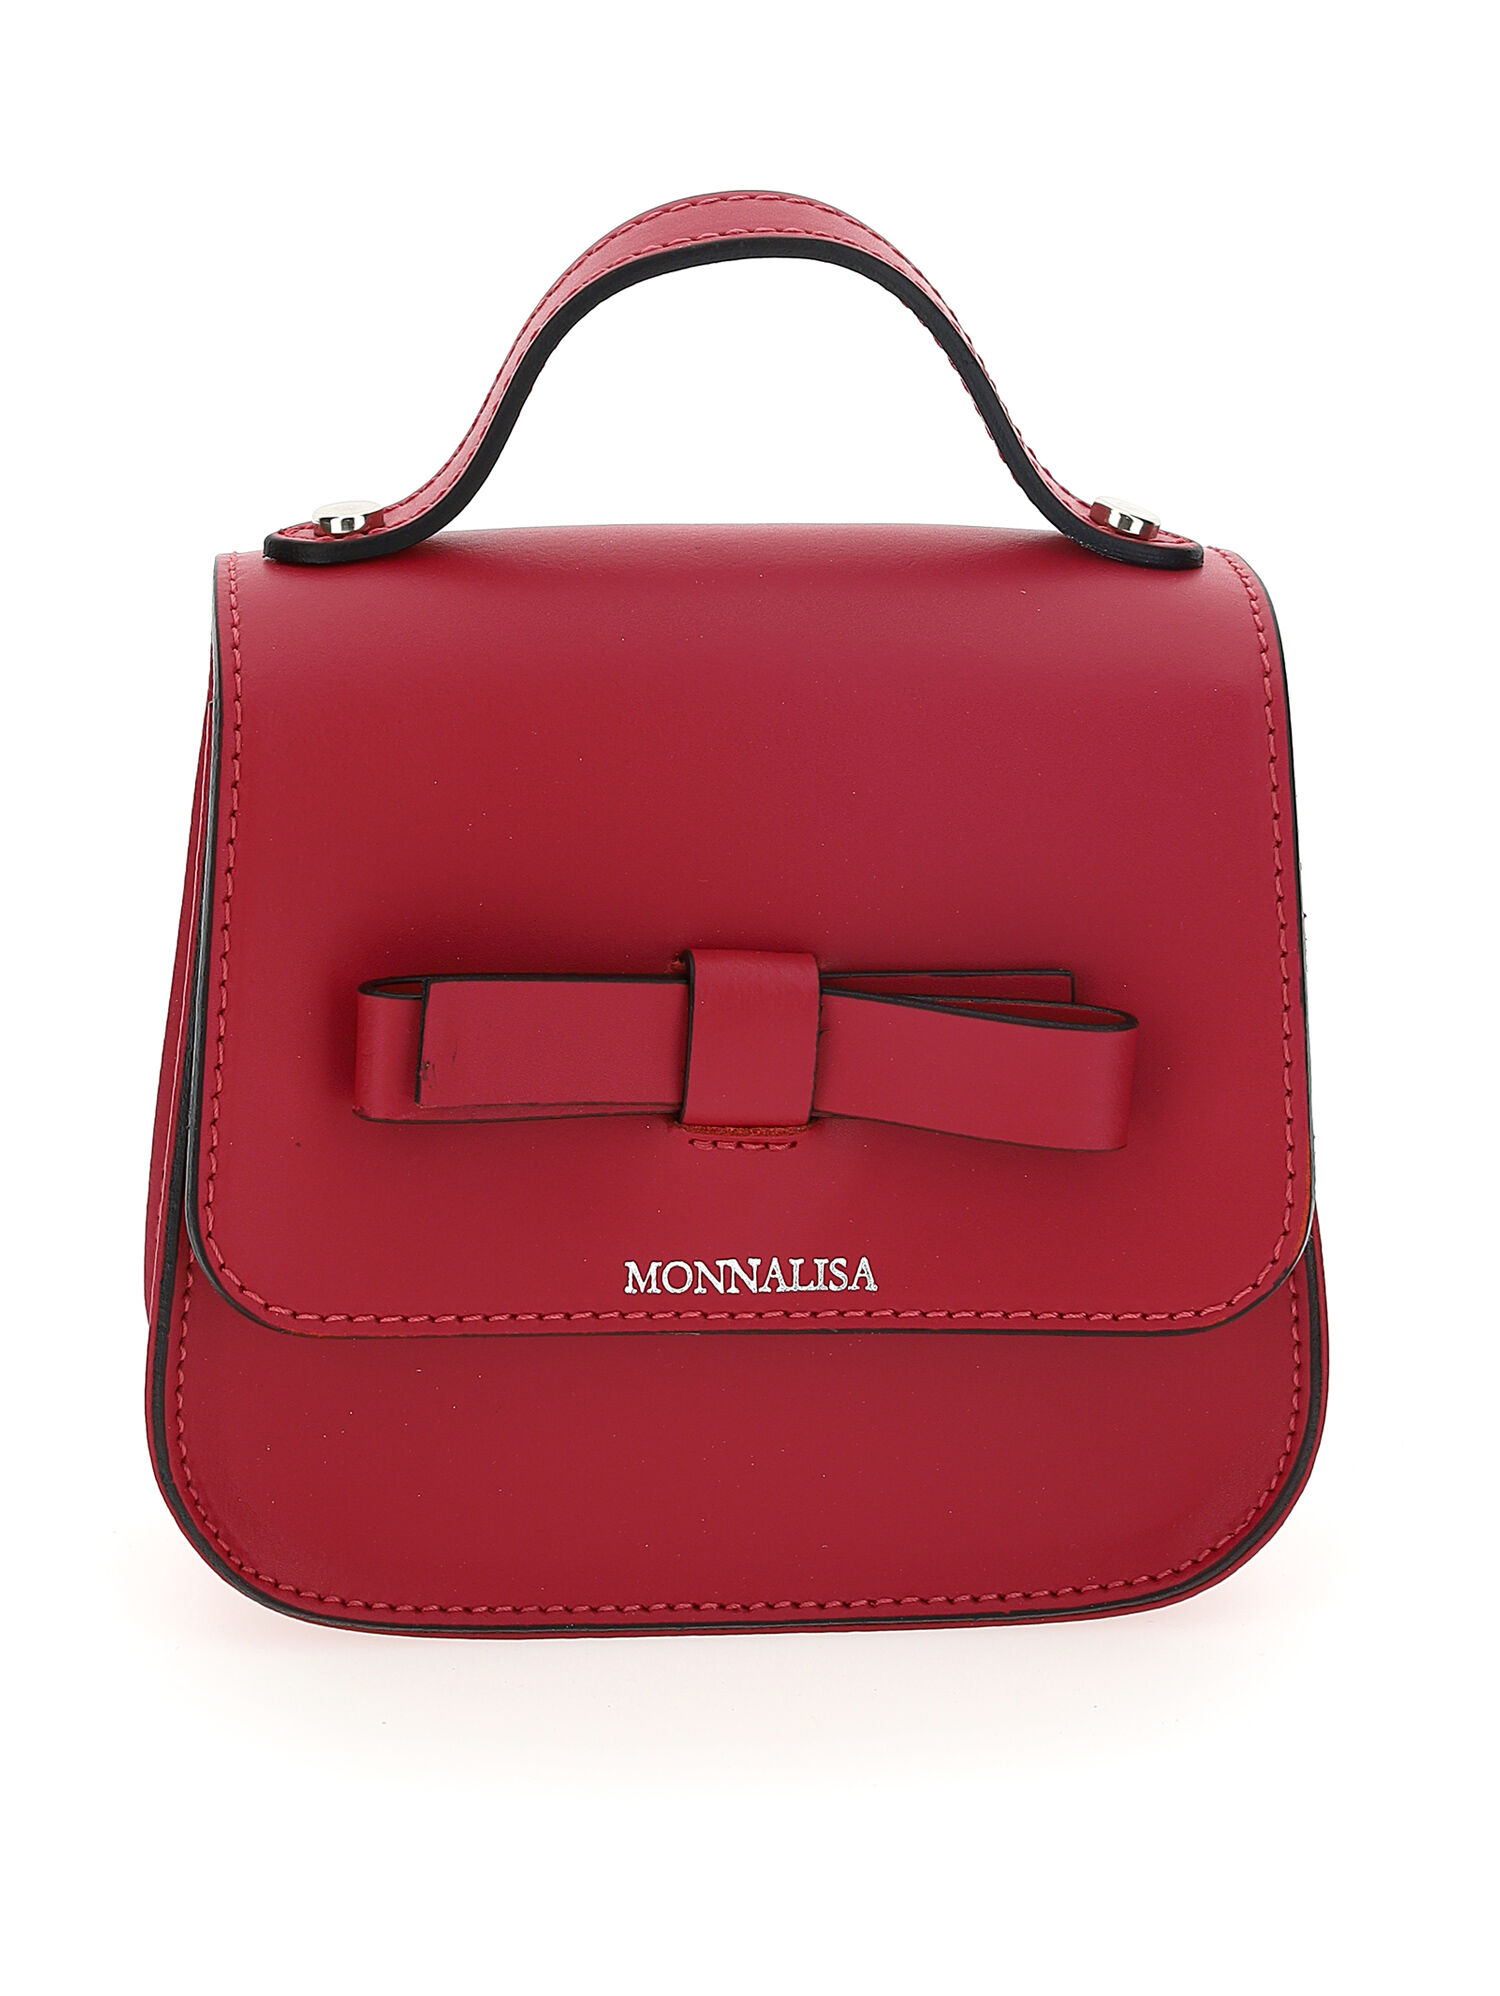 Mini leather bag Monnalisa Girls Accessories Bags Rucksacks 